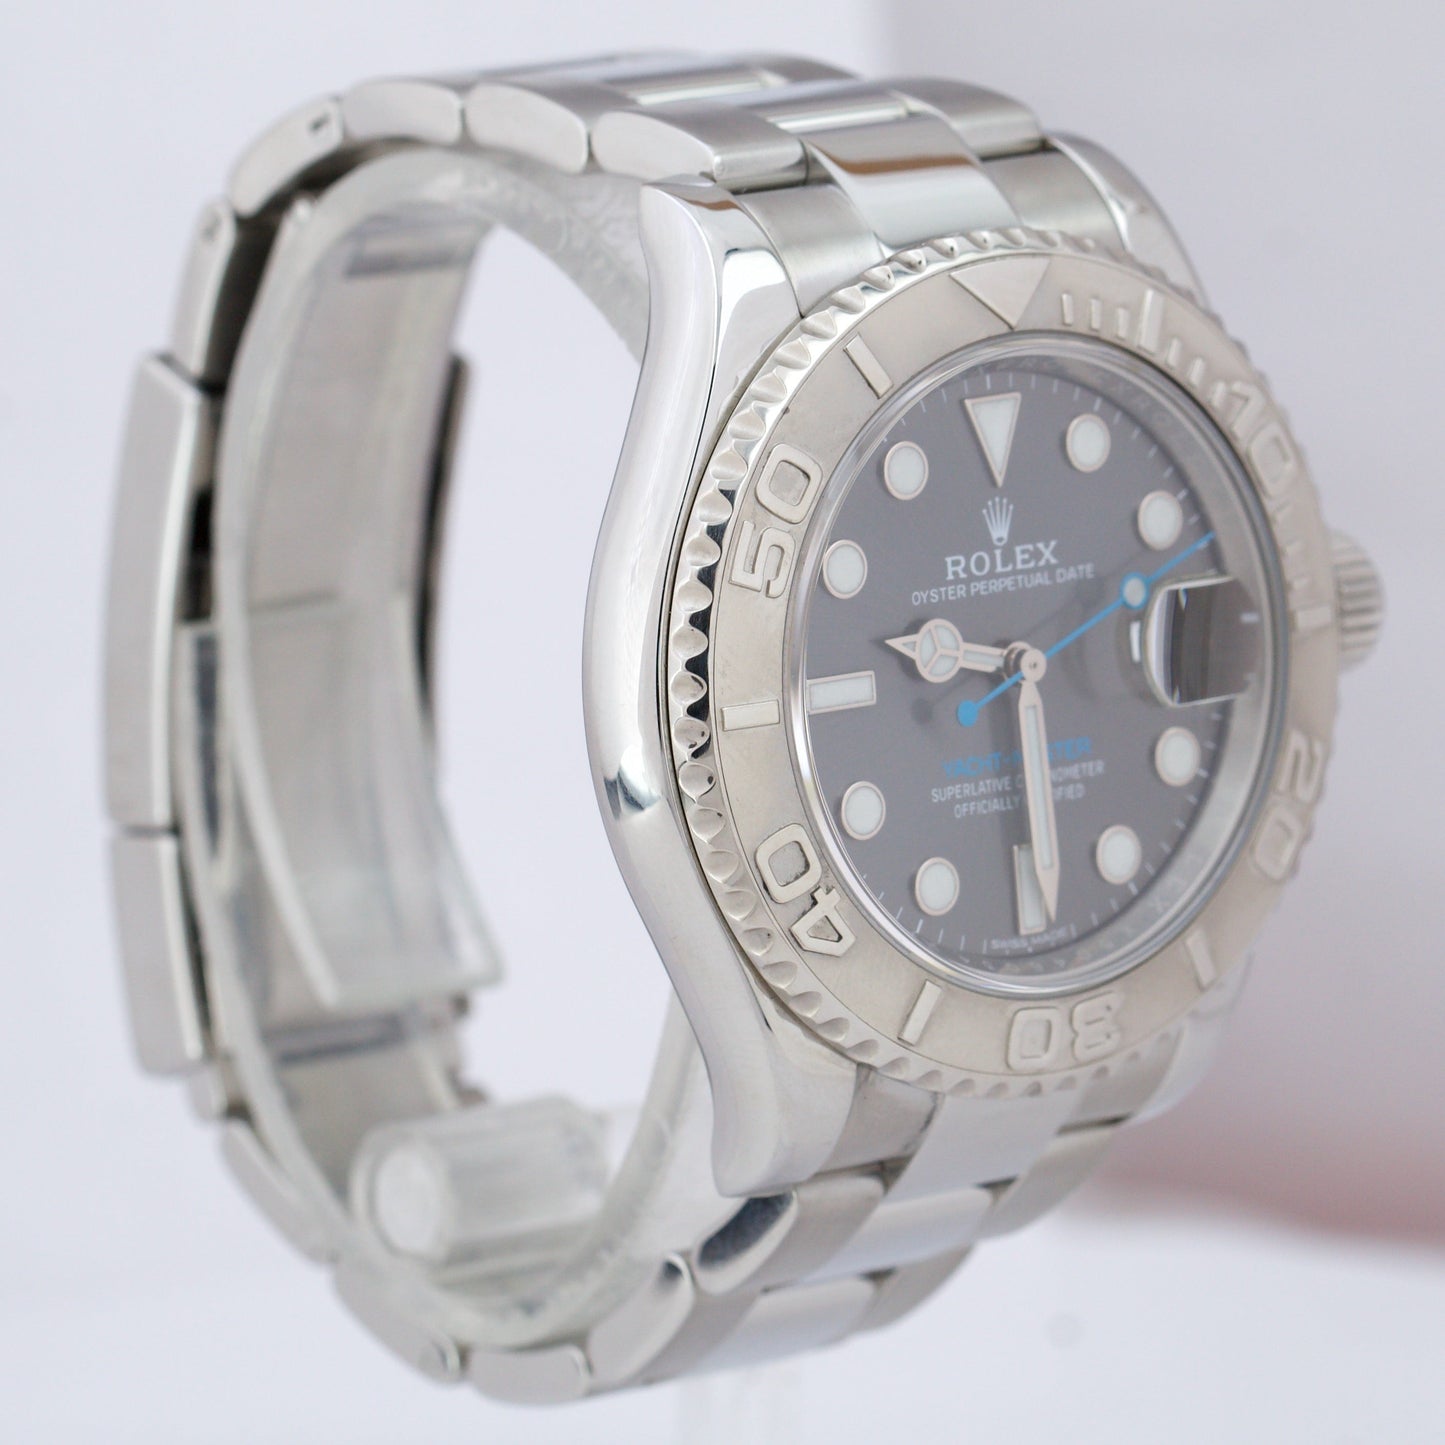 MINT Rolex Yacht-Master Dark Rhodium Stainless Steel Platinum 40mm Watch 116622